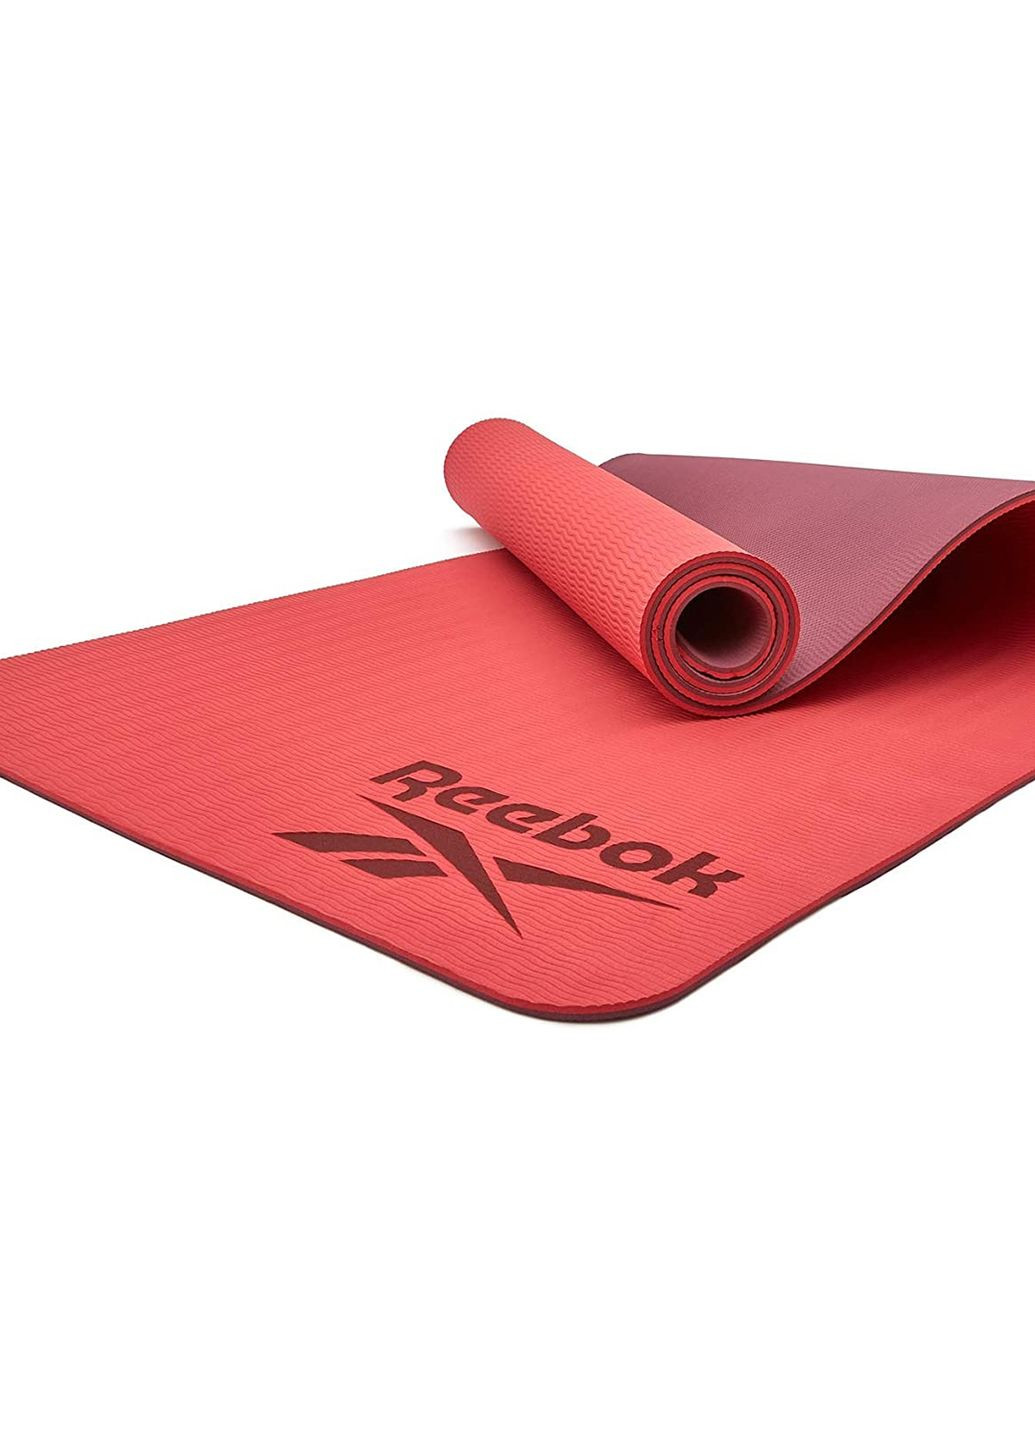 Двухсторонний коврик для йоги Double Sided Yoga Mat красный unisex 173 х 61 х 0,4 см Reebok (262297438)